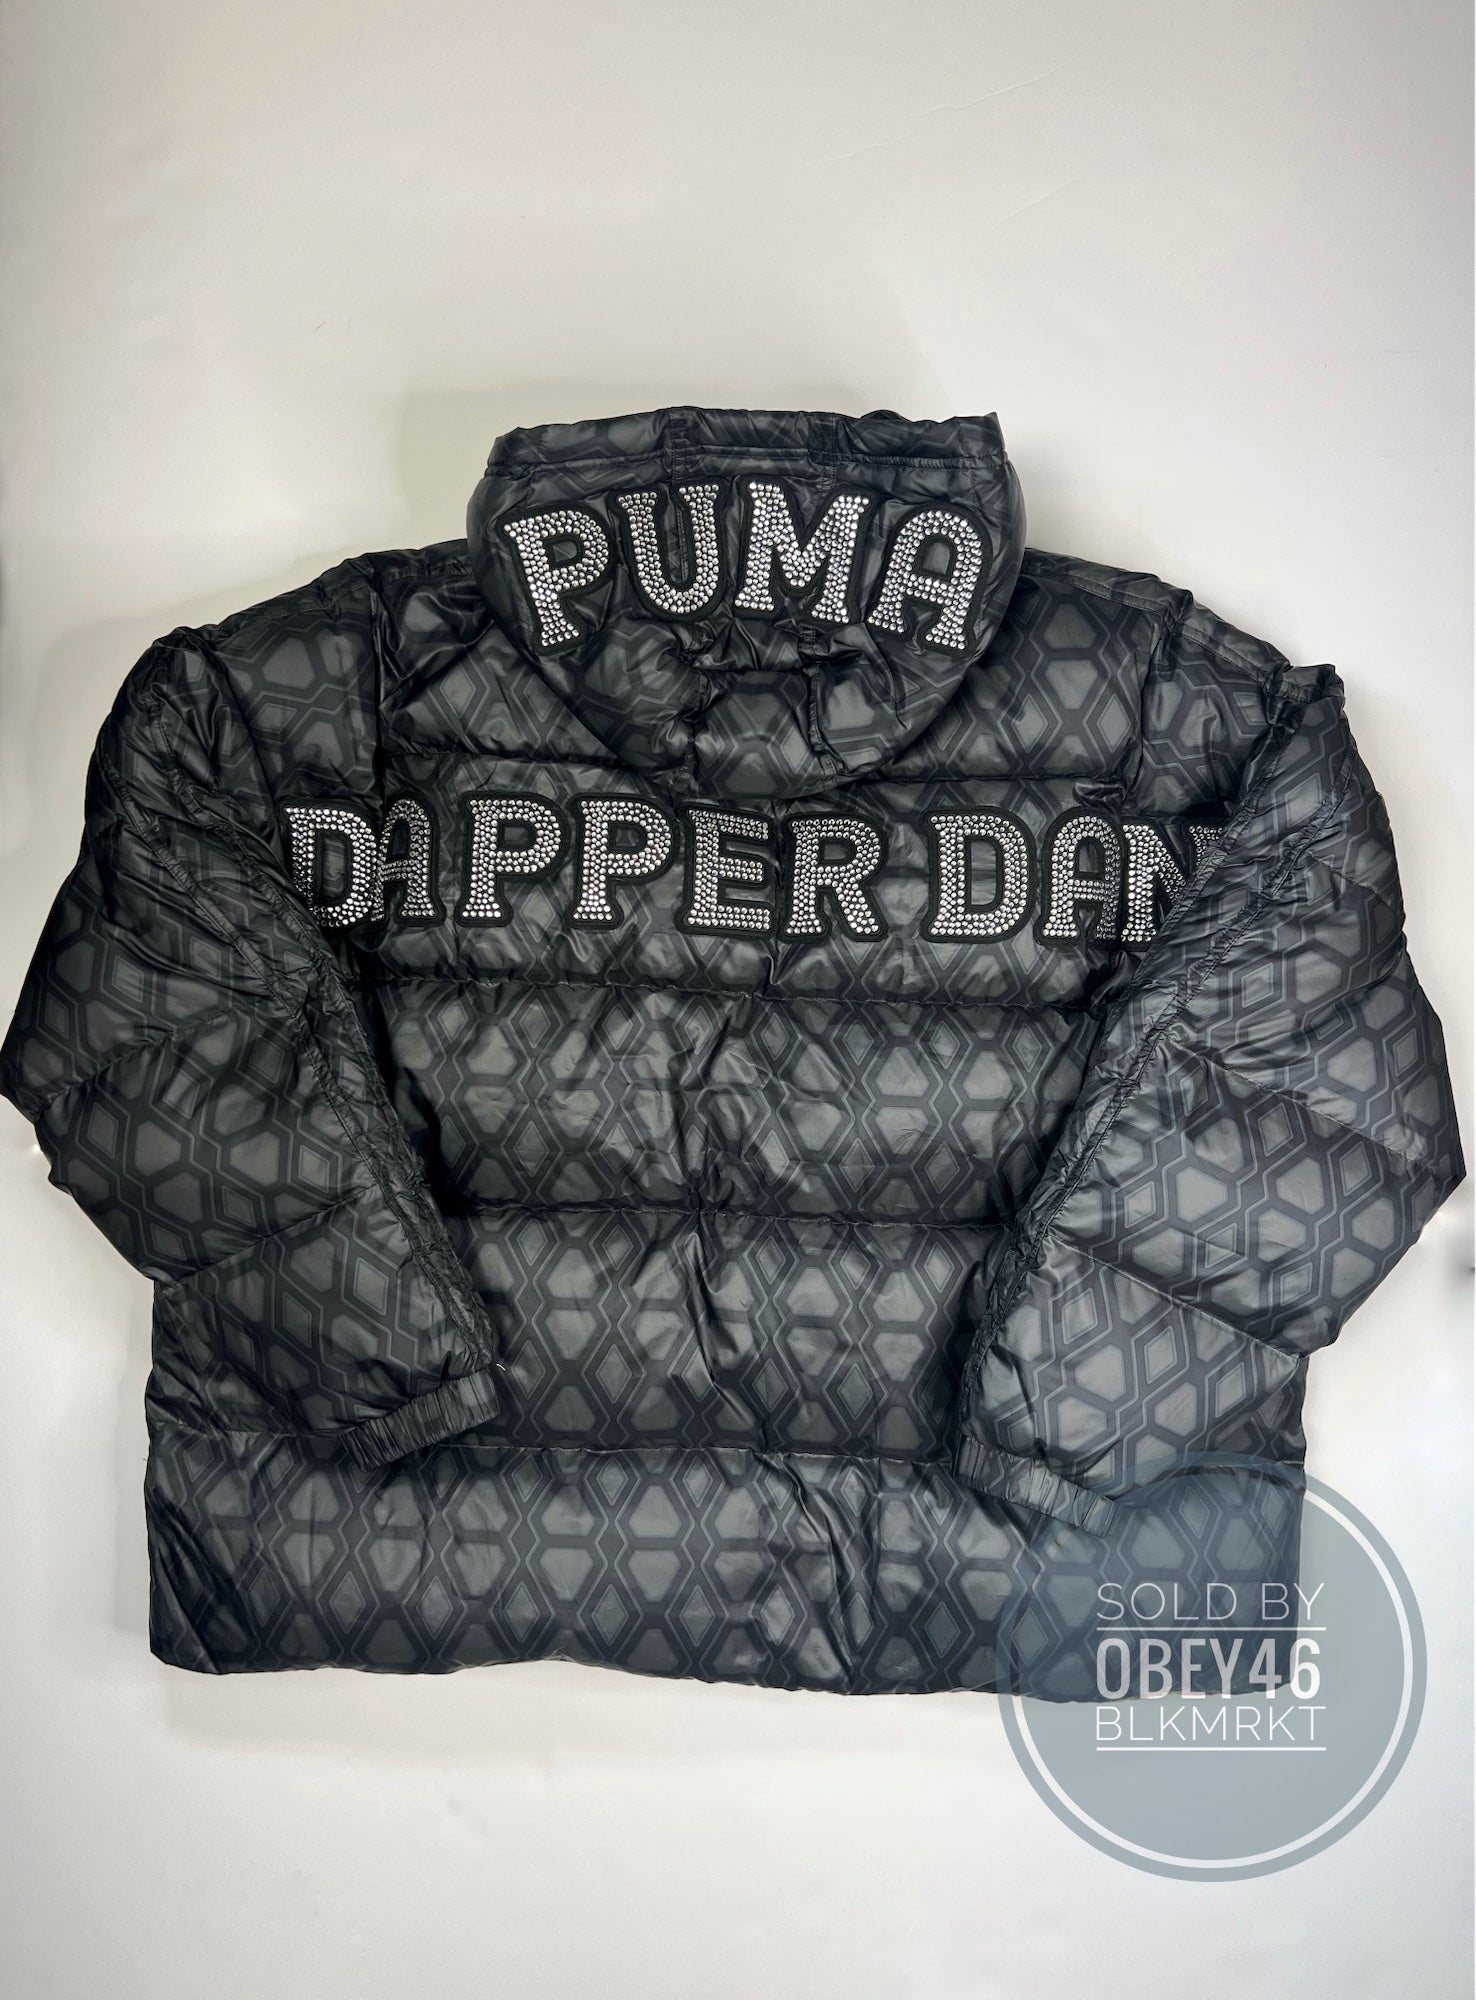 Puma x Dapper Dan Men's Bomber Jacket